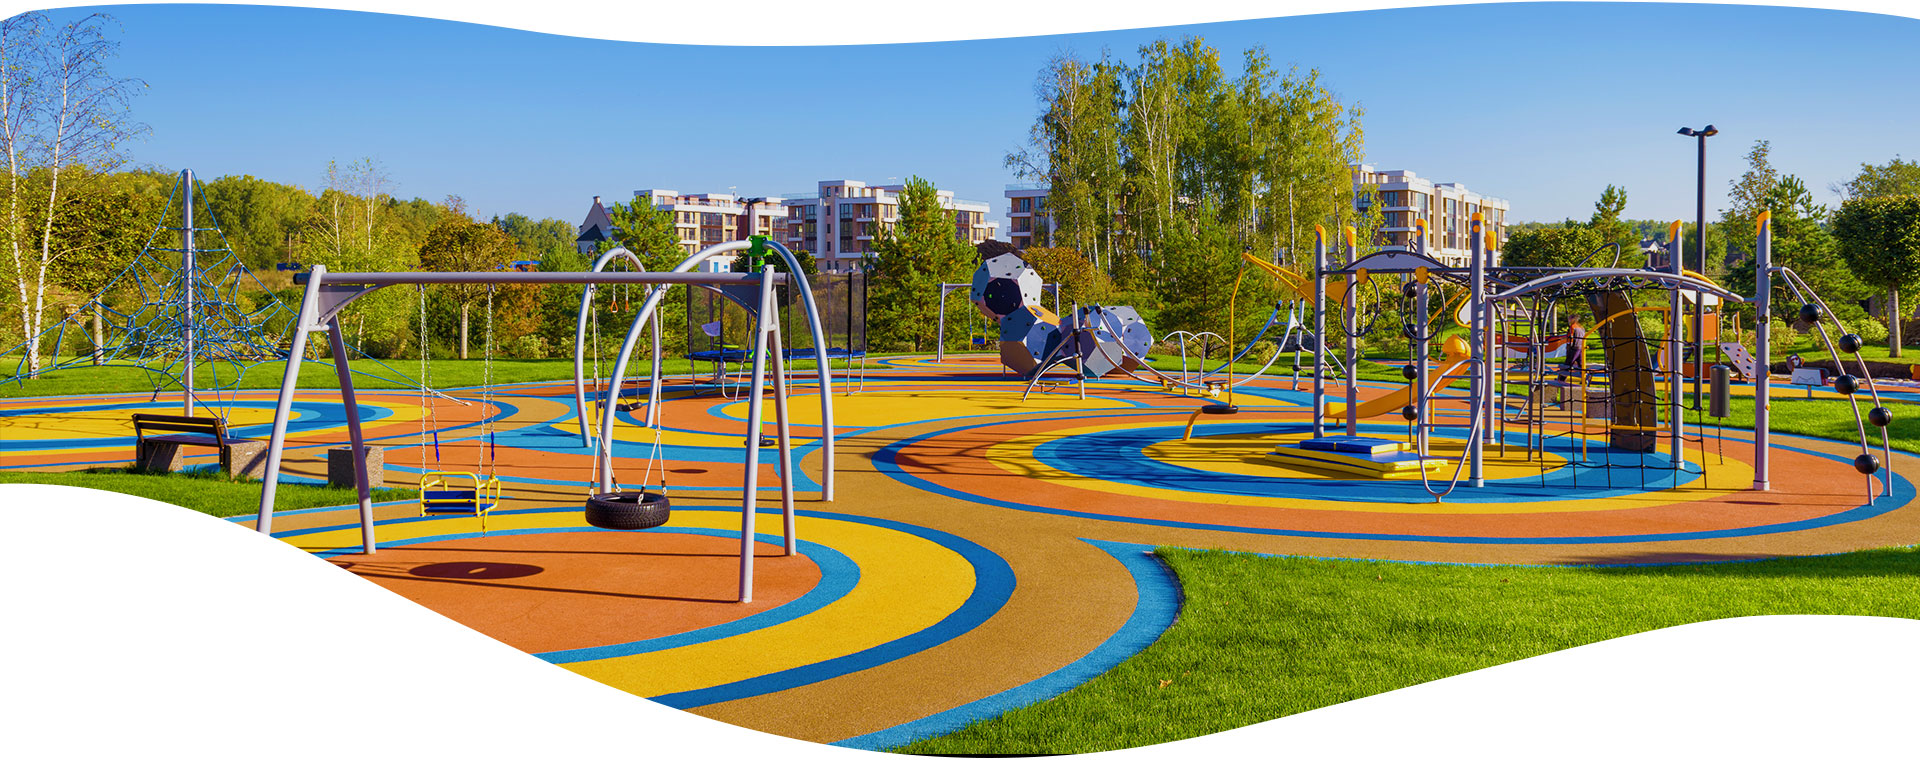 Realizzazione aree parco Giochi per Bambini - Ducci